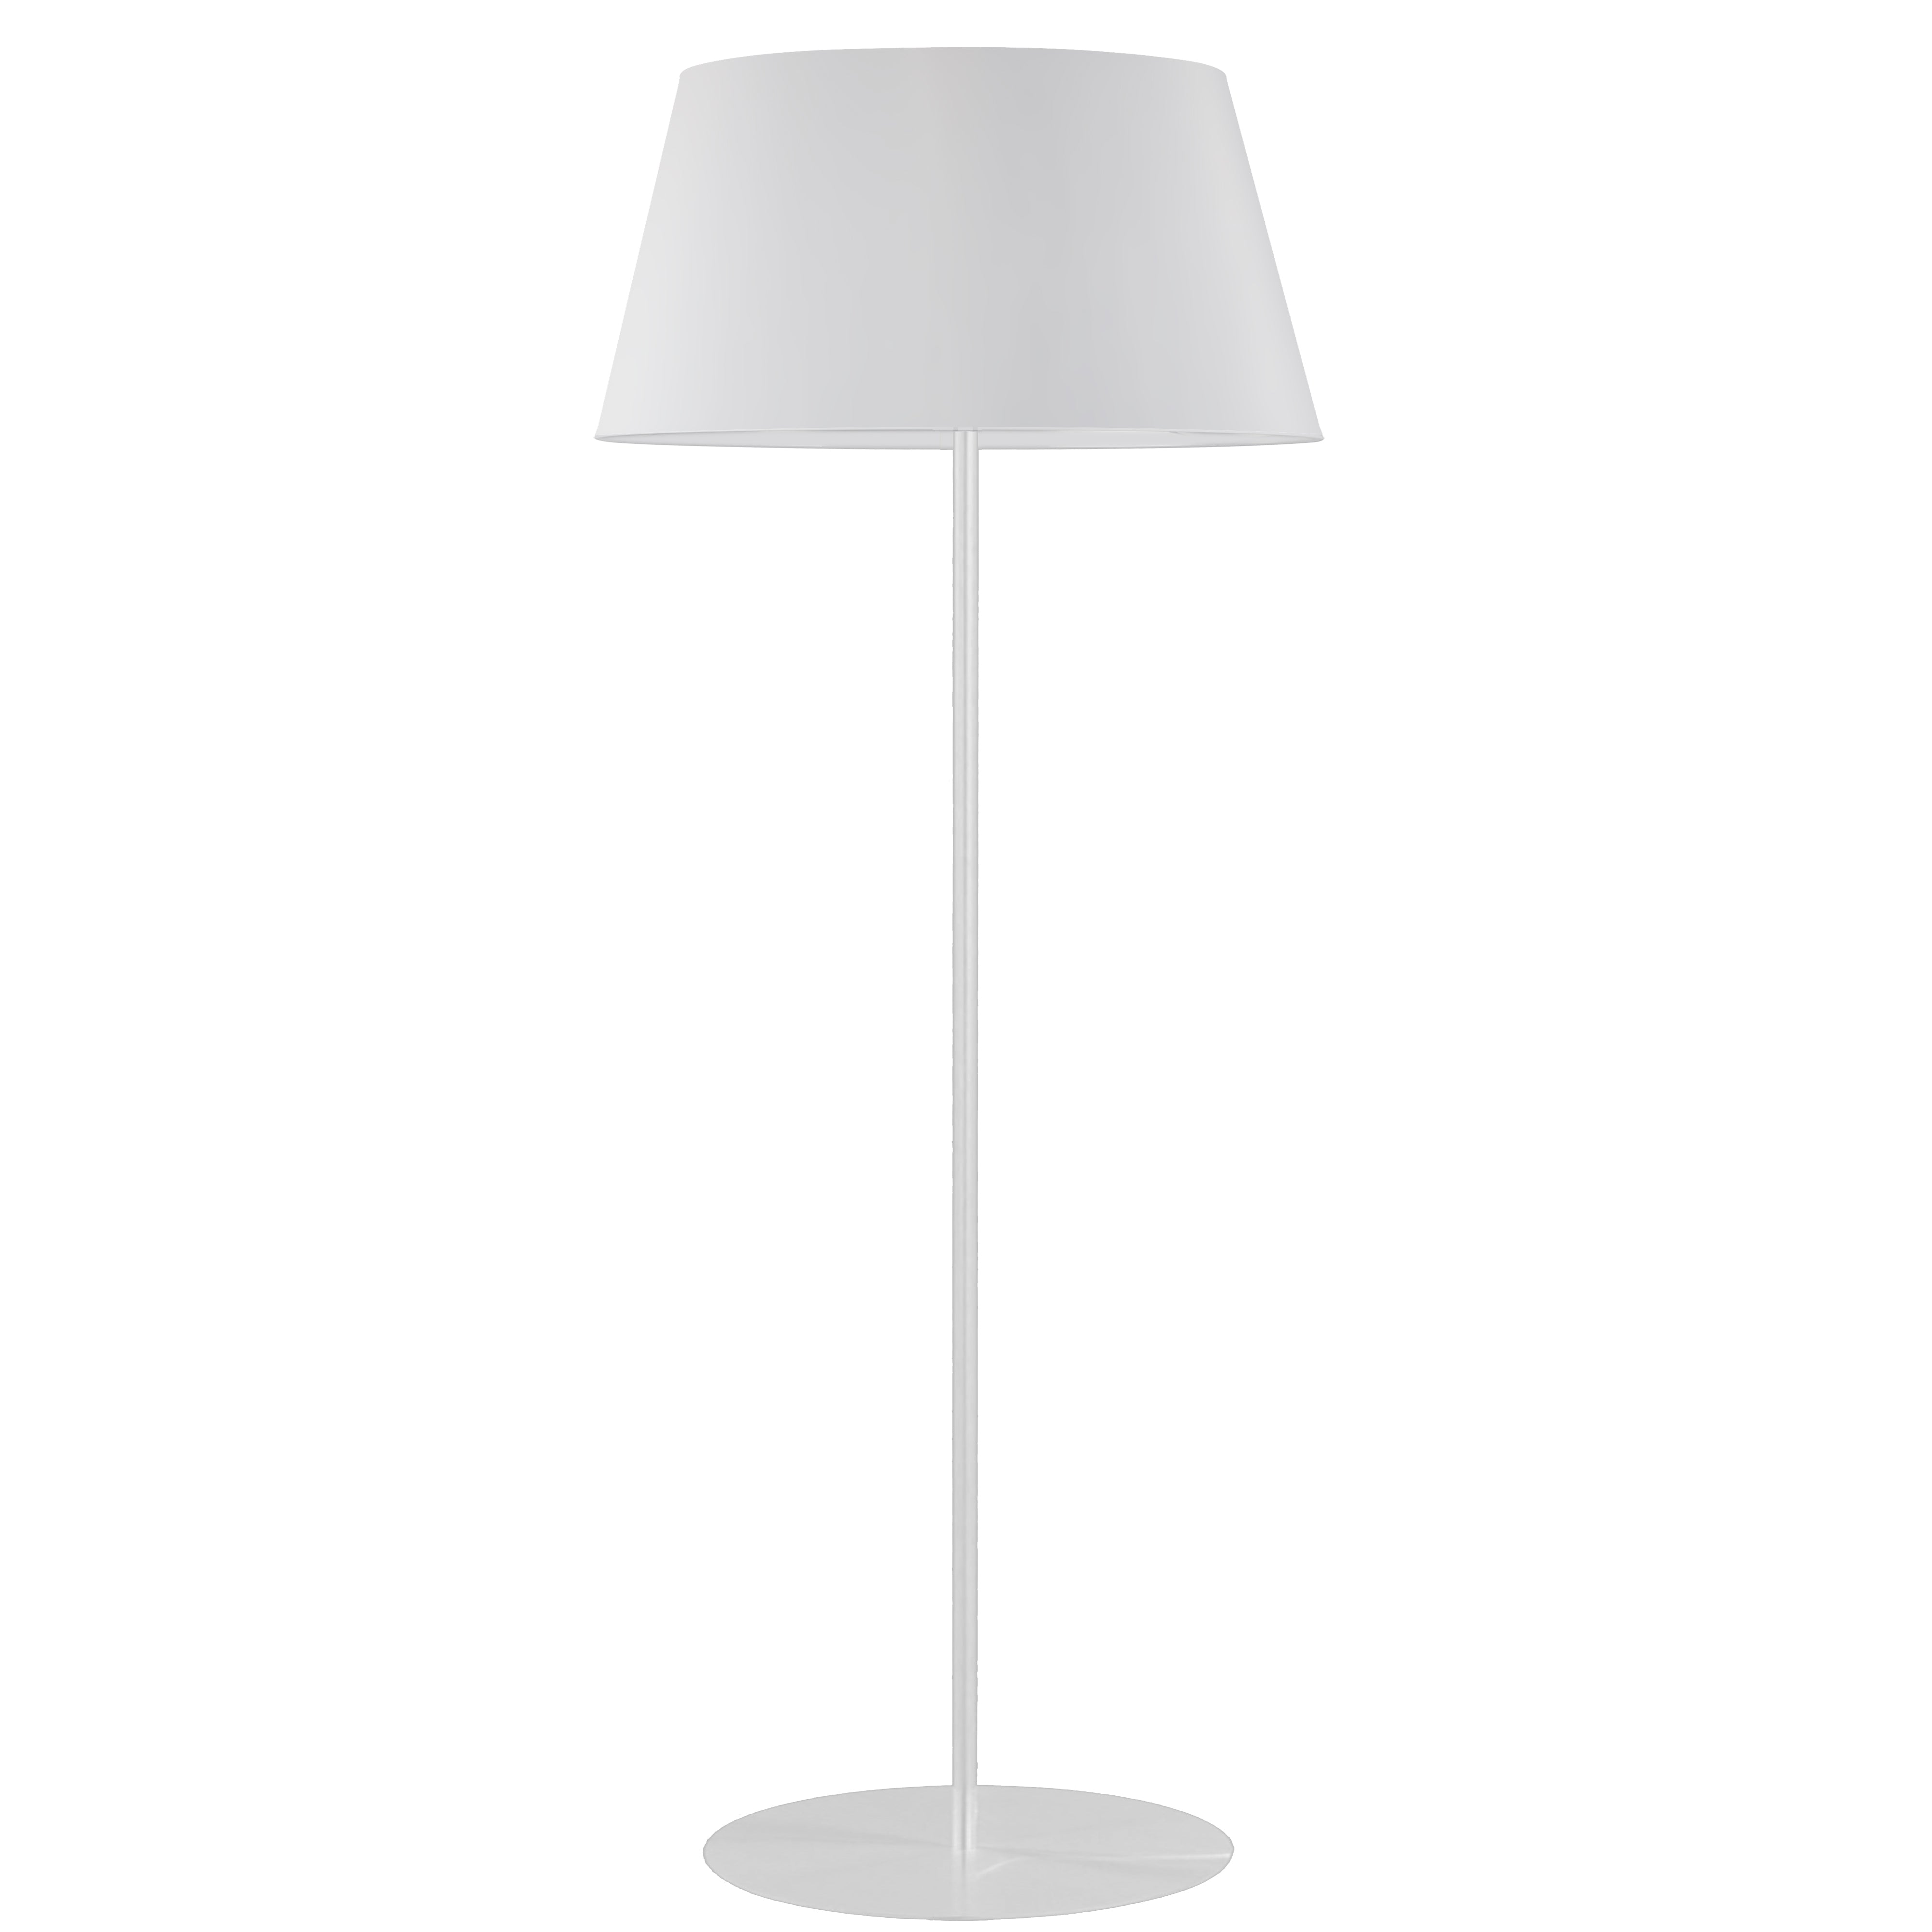 GRETCHEN Lampe sur pied Blanc DEL INTÉGRÉ - GTC-R631F-MW-WH | DAINOLITE